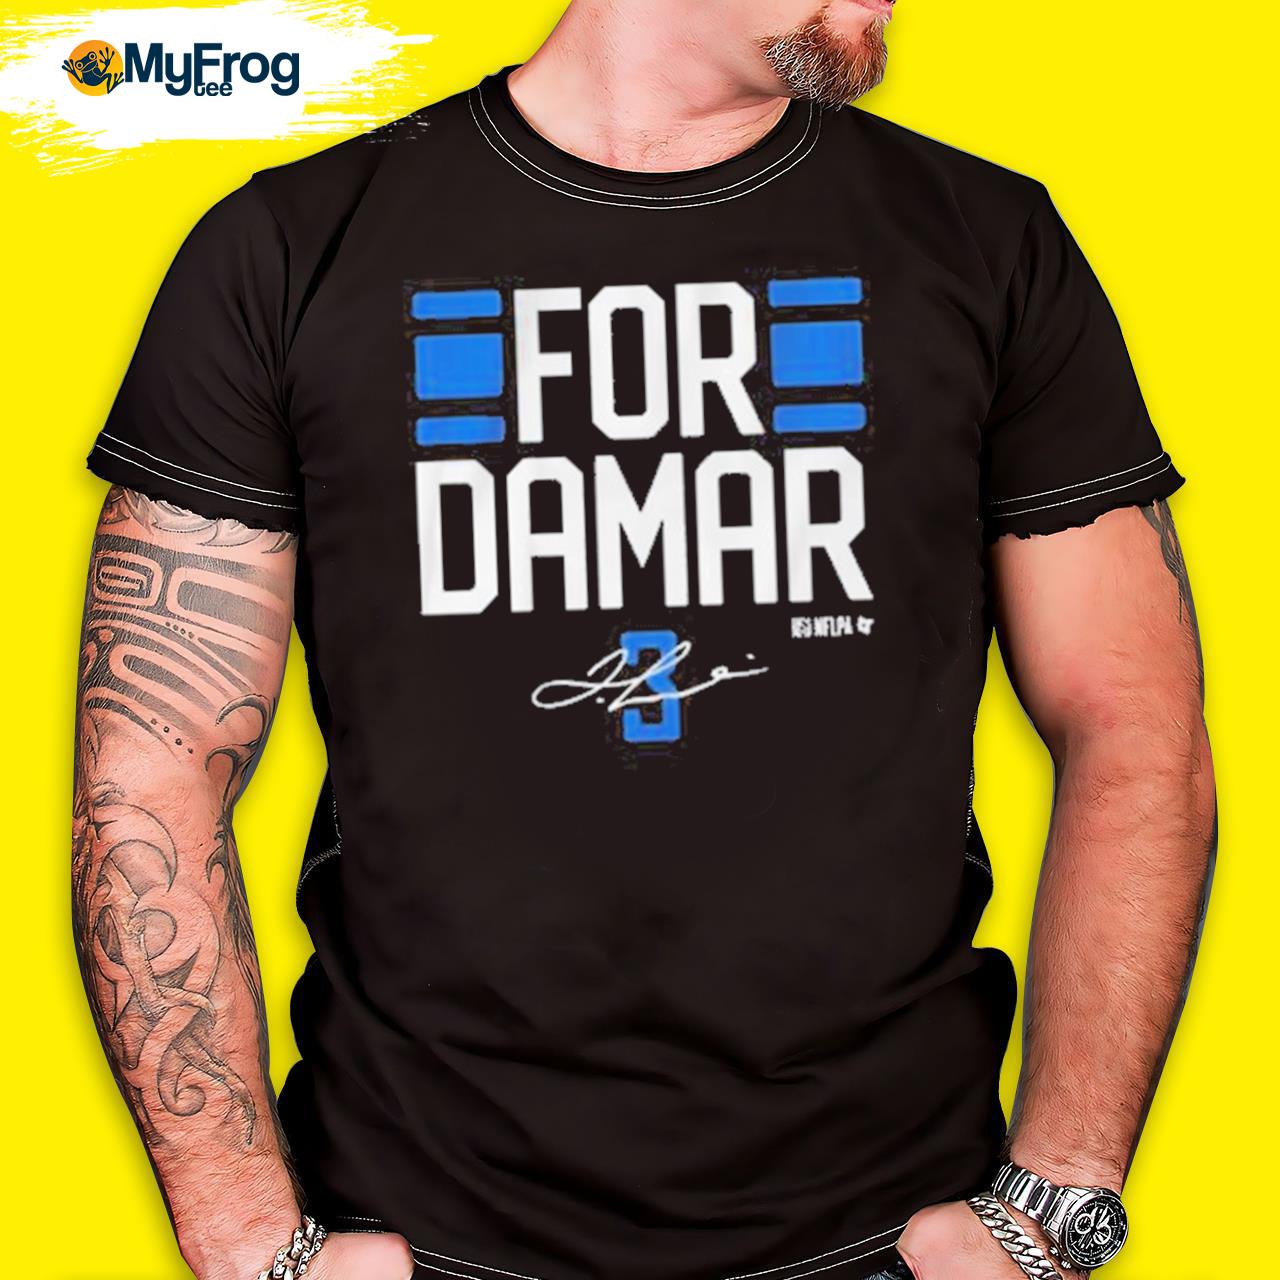 damar 3 shirt